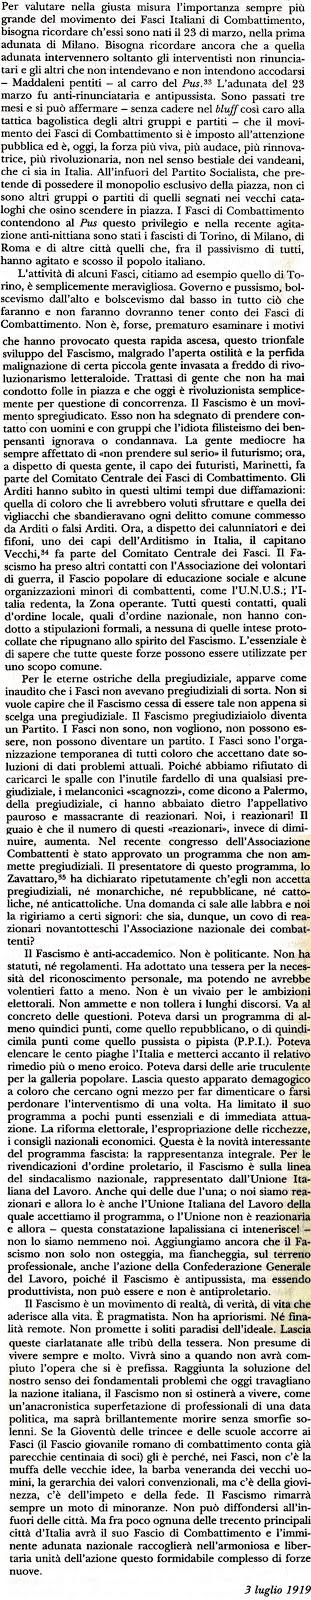 Due editoriali di Benito Mussolini per Il Popolo d'Italia